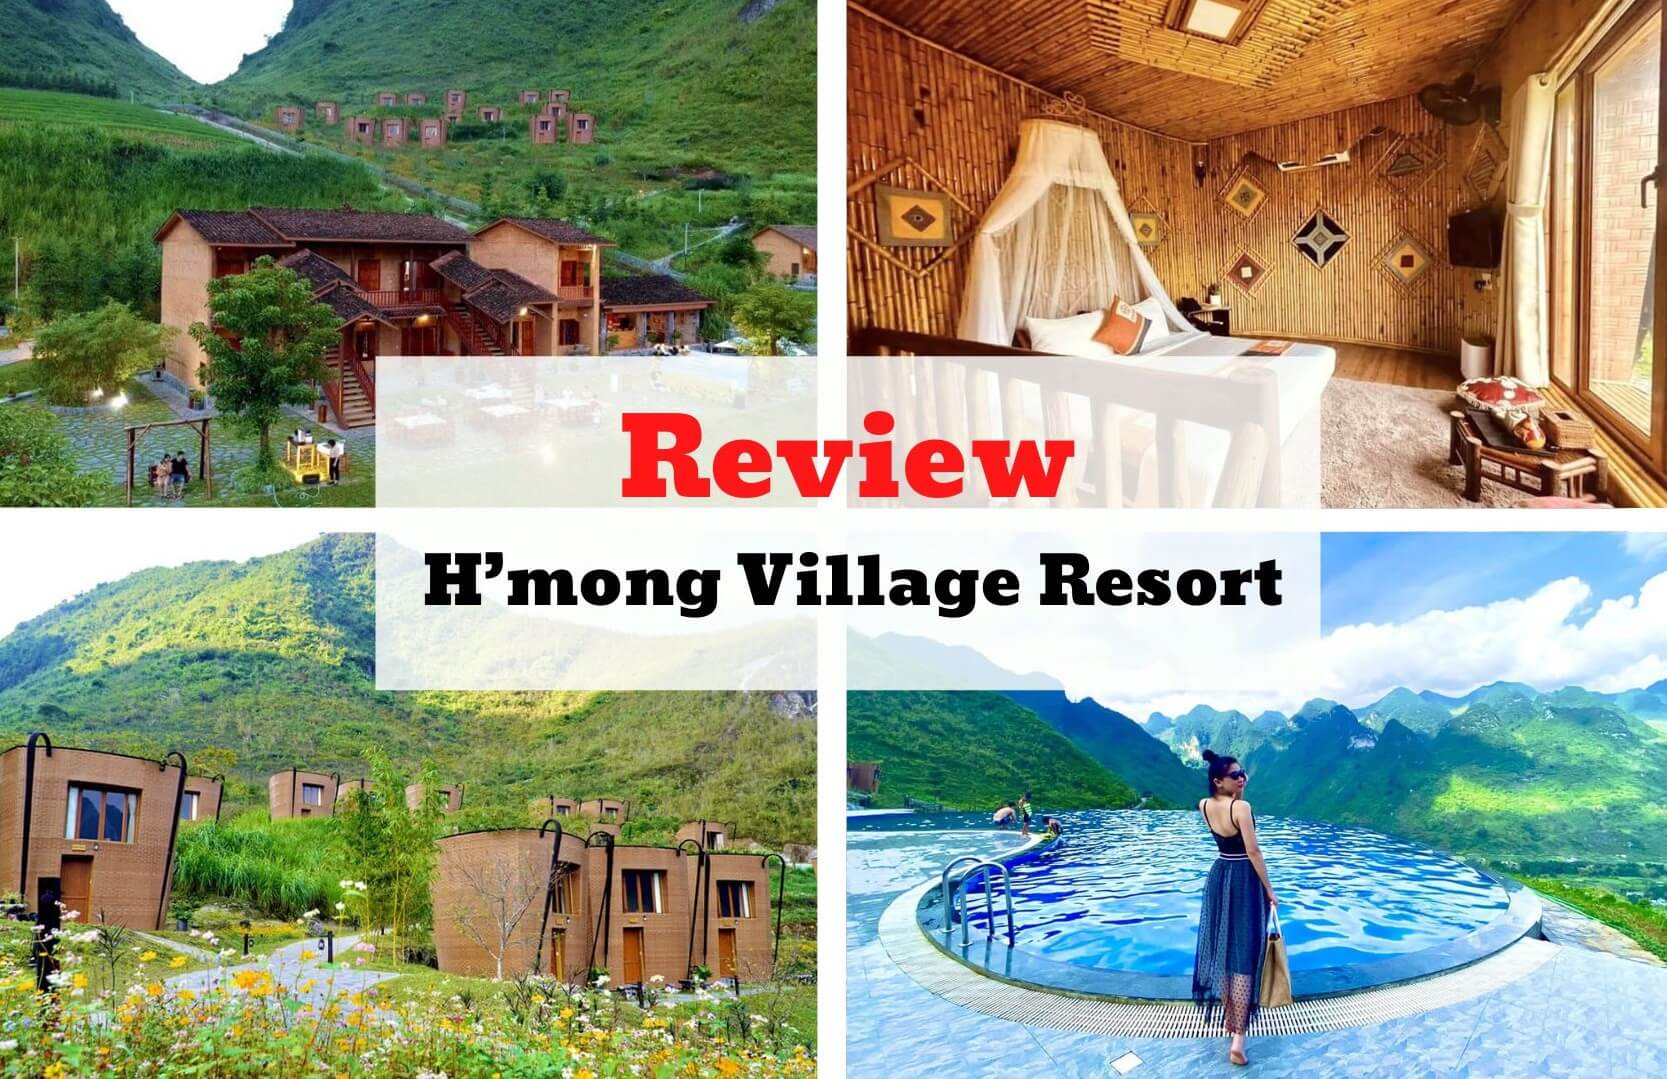 Review H'mong Village Resort  - Resort hình chiếc gùi độc đáo